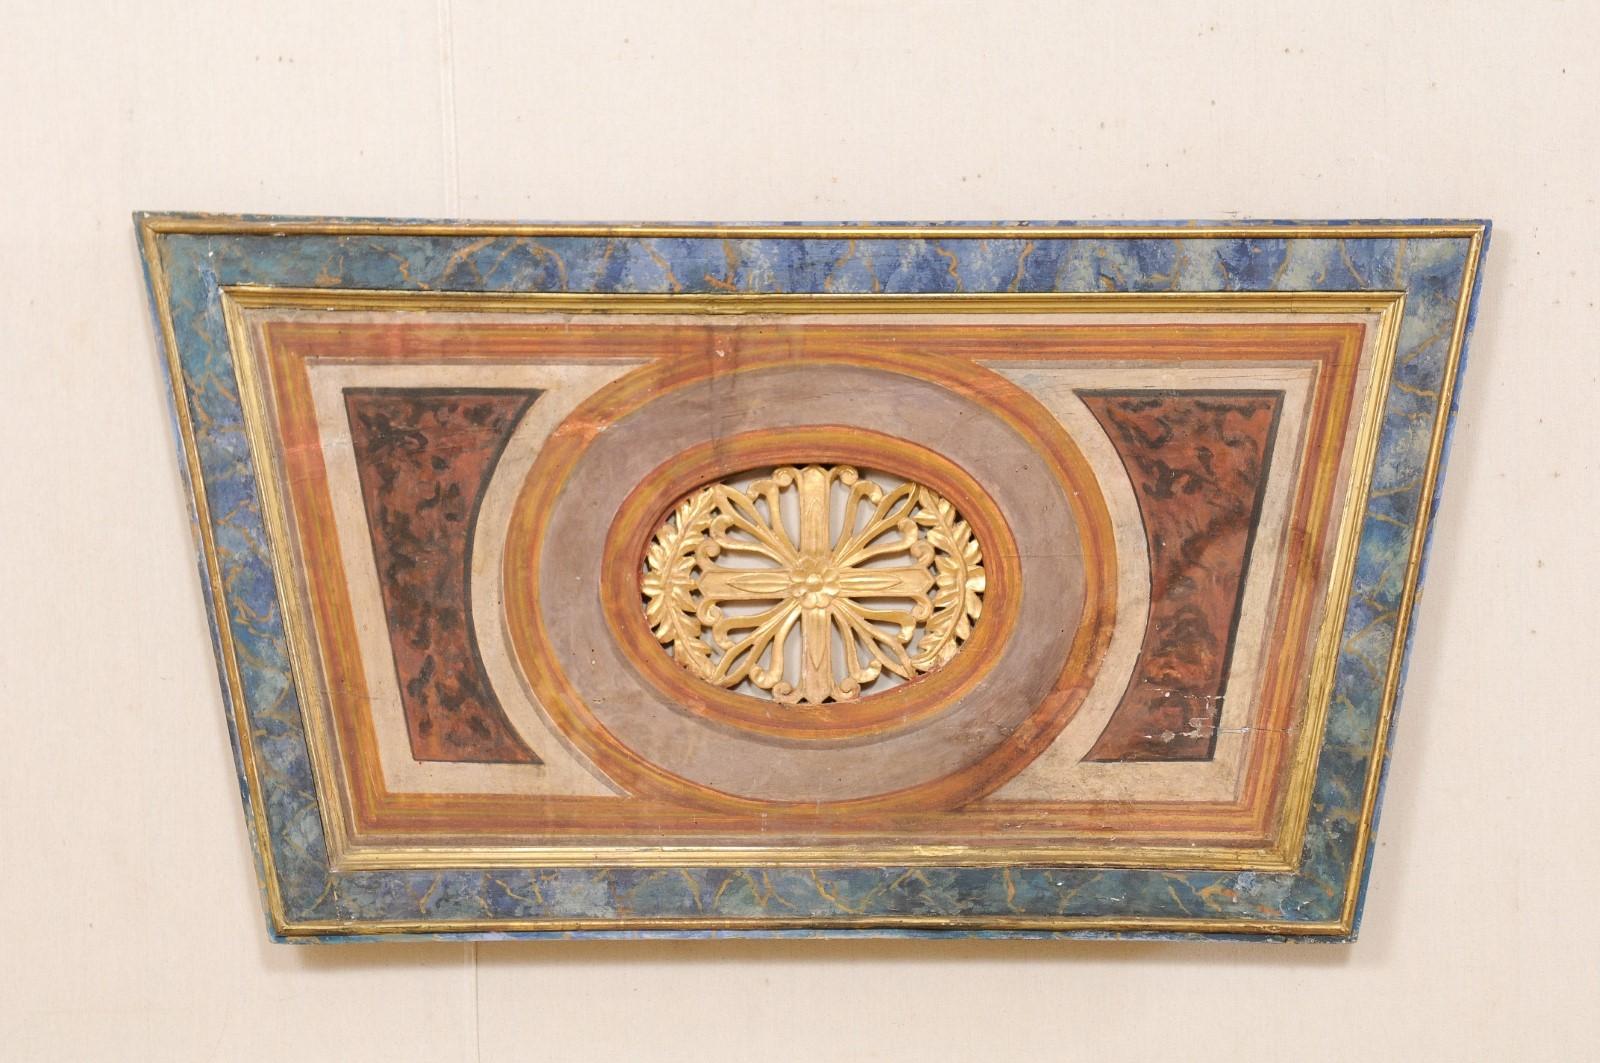 Eine italienische dekorative Wandtafel in Trapezform aus dem 19. Jahrhundert. Dieses antike Wandornament aus Italien hat die Form eines umgekehrten Trapezes mit einem ovalen Zentrum, das aus einem durchbrochenen, geschnitzten Blumenmedaillon